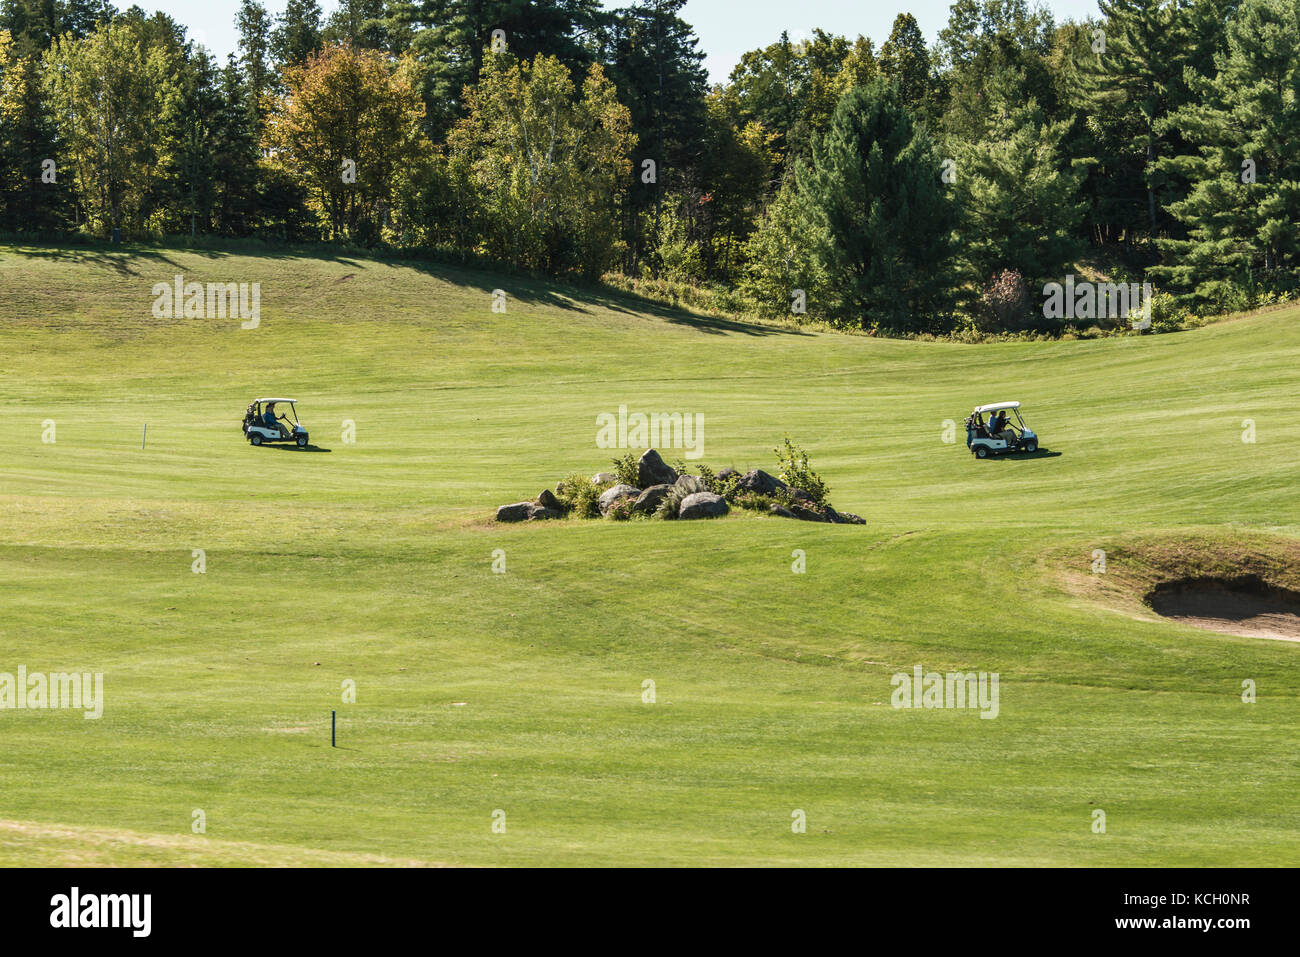 Wilno ontario canada 09.09.2017 - giocatore di golf Golf giocatori che giocano su verde gras su un corso outdoor tee-shot canadese di eventi Foto Stock